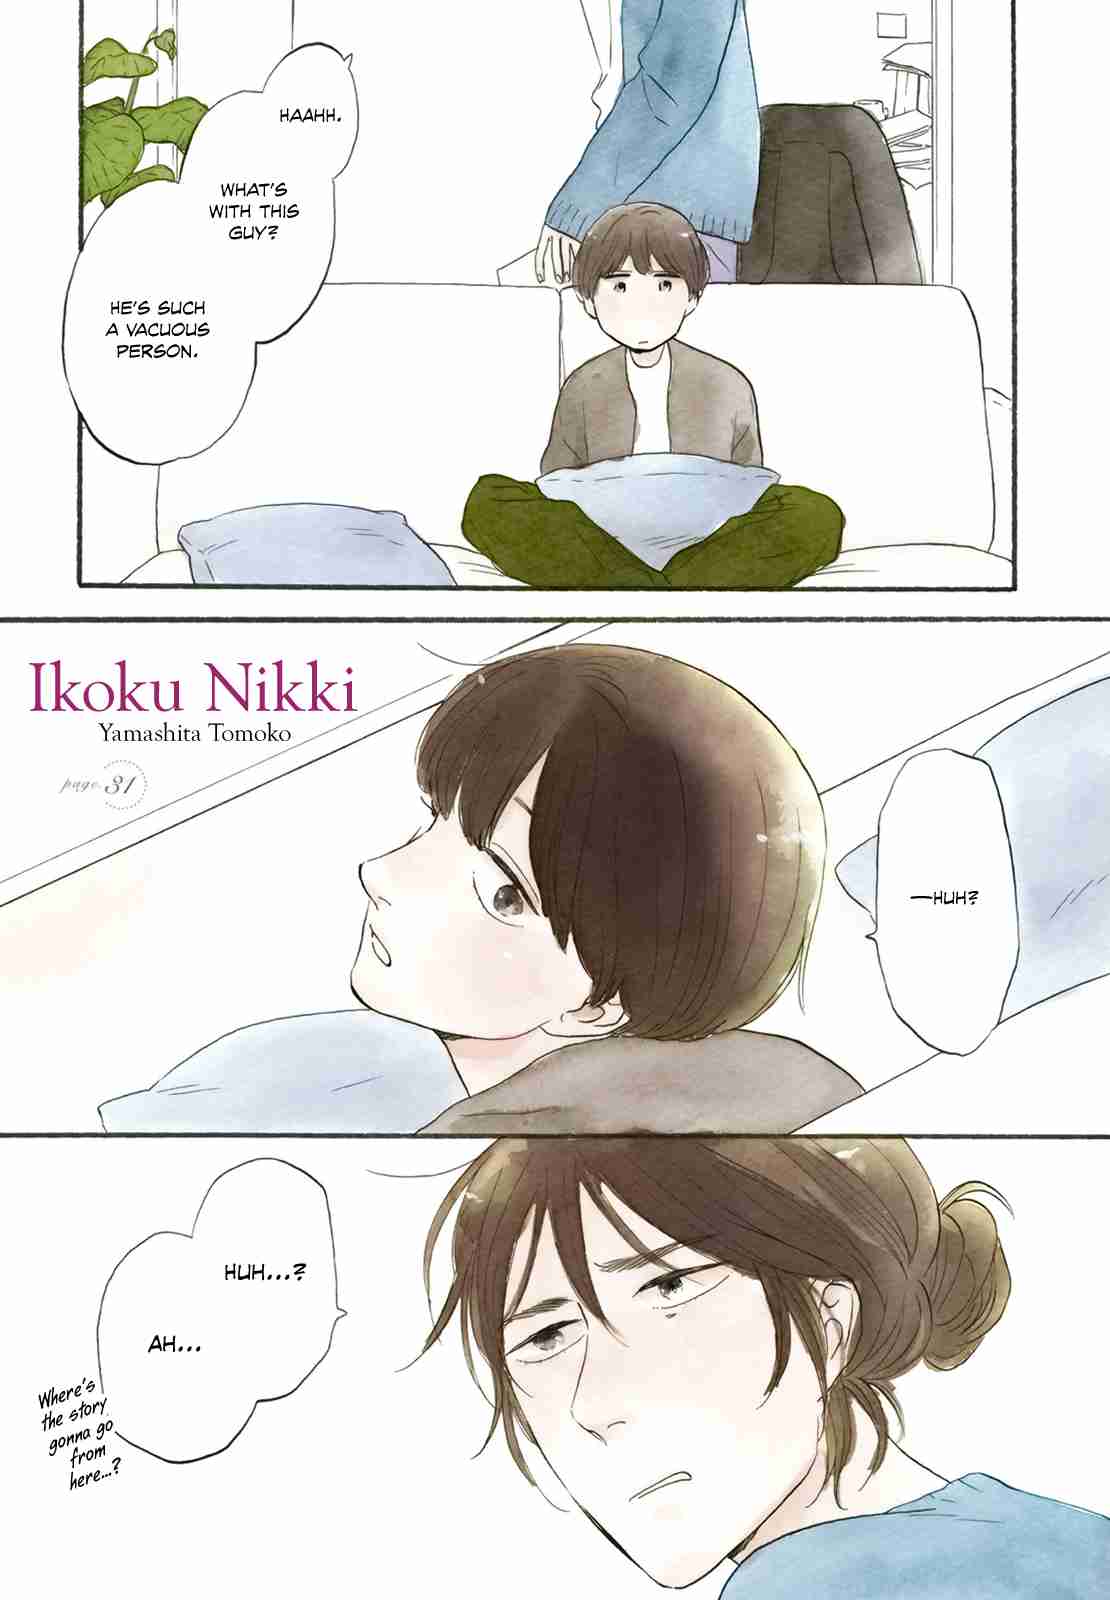 Ikoku Nikki Vol. 7 Ch. 31 page.31